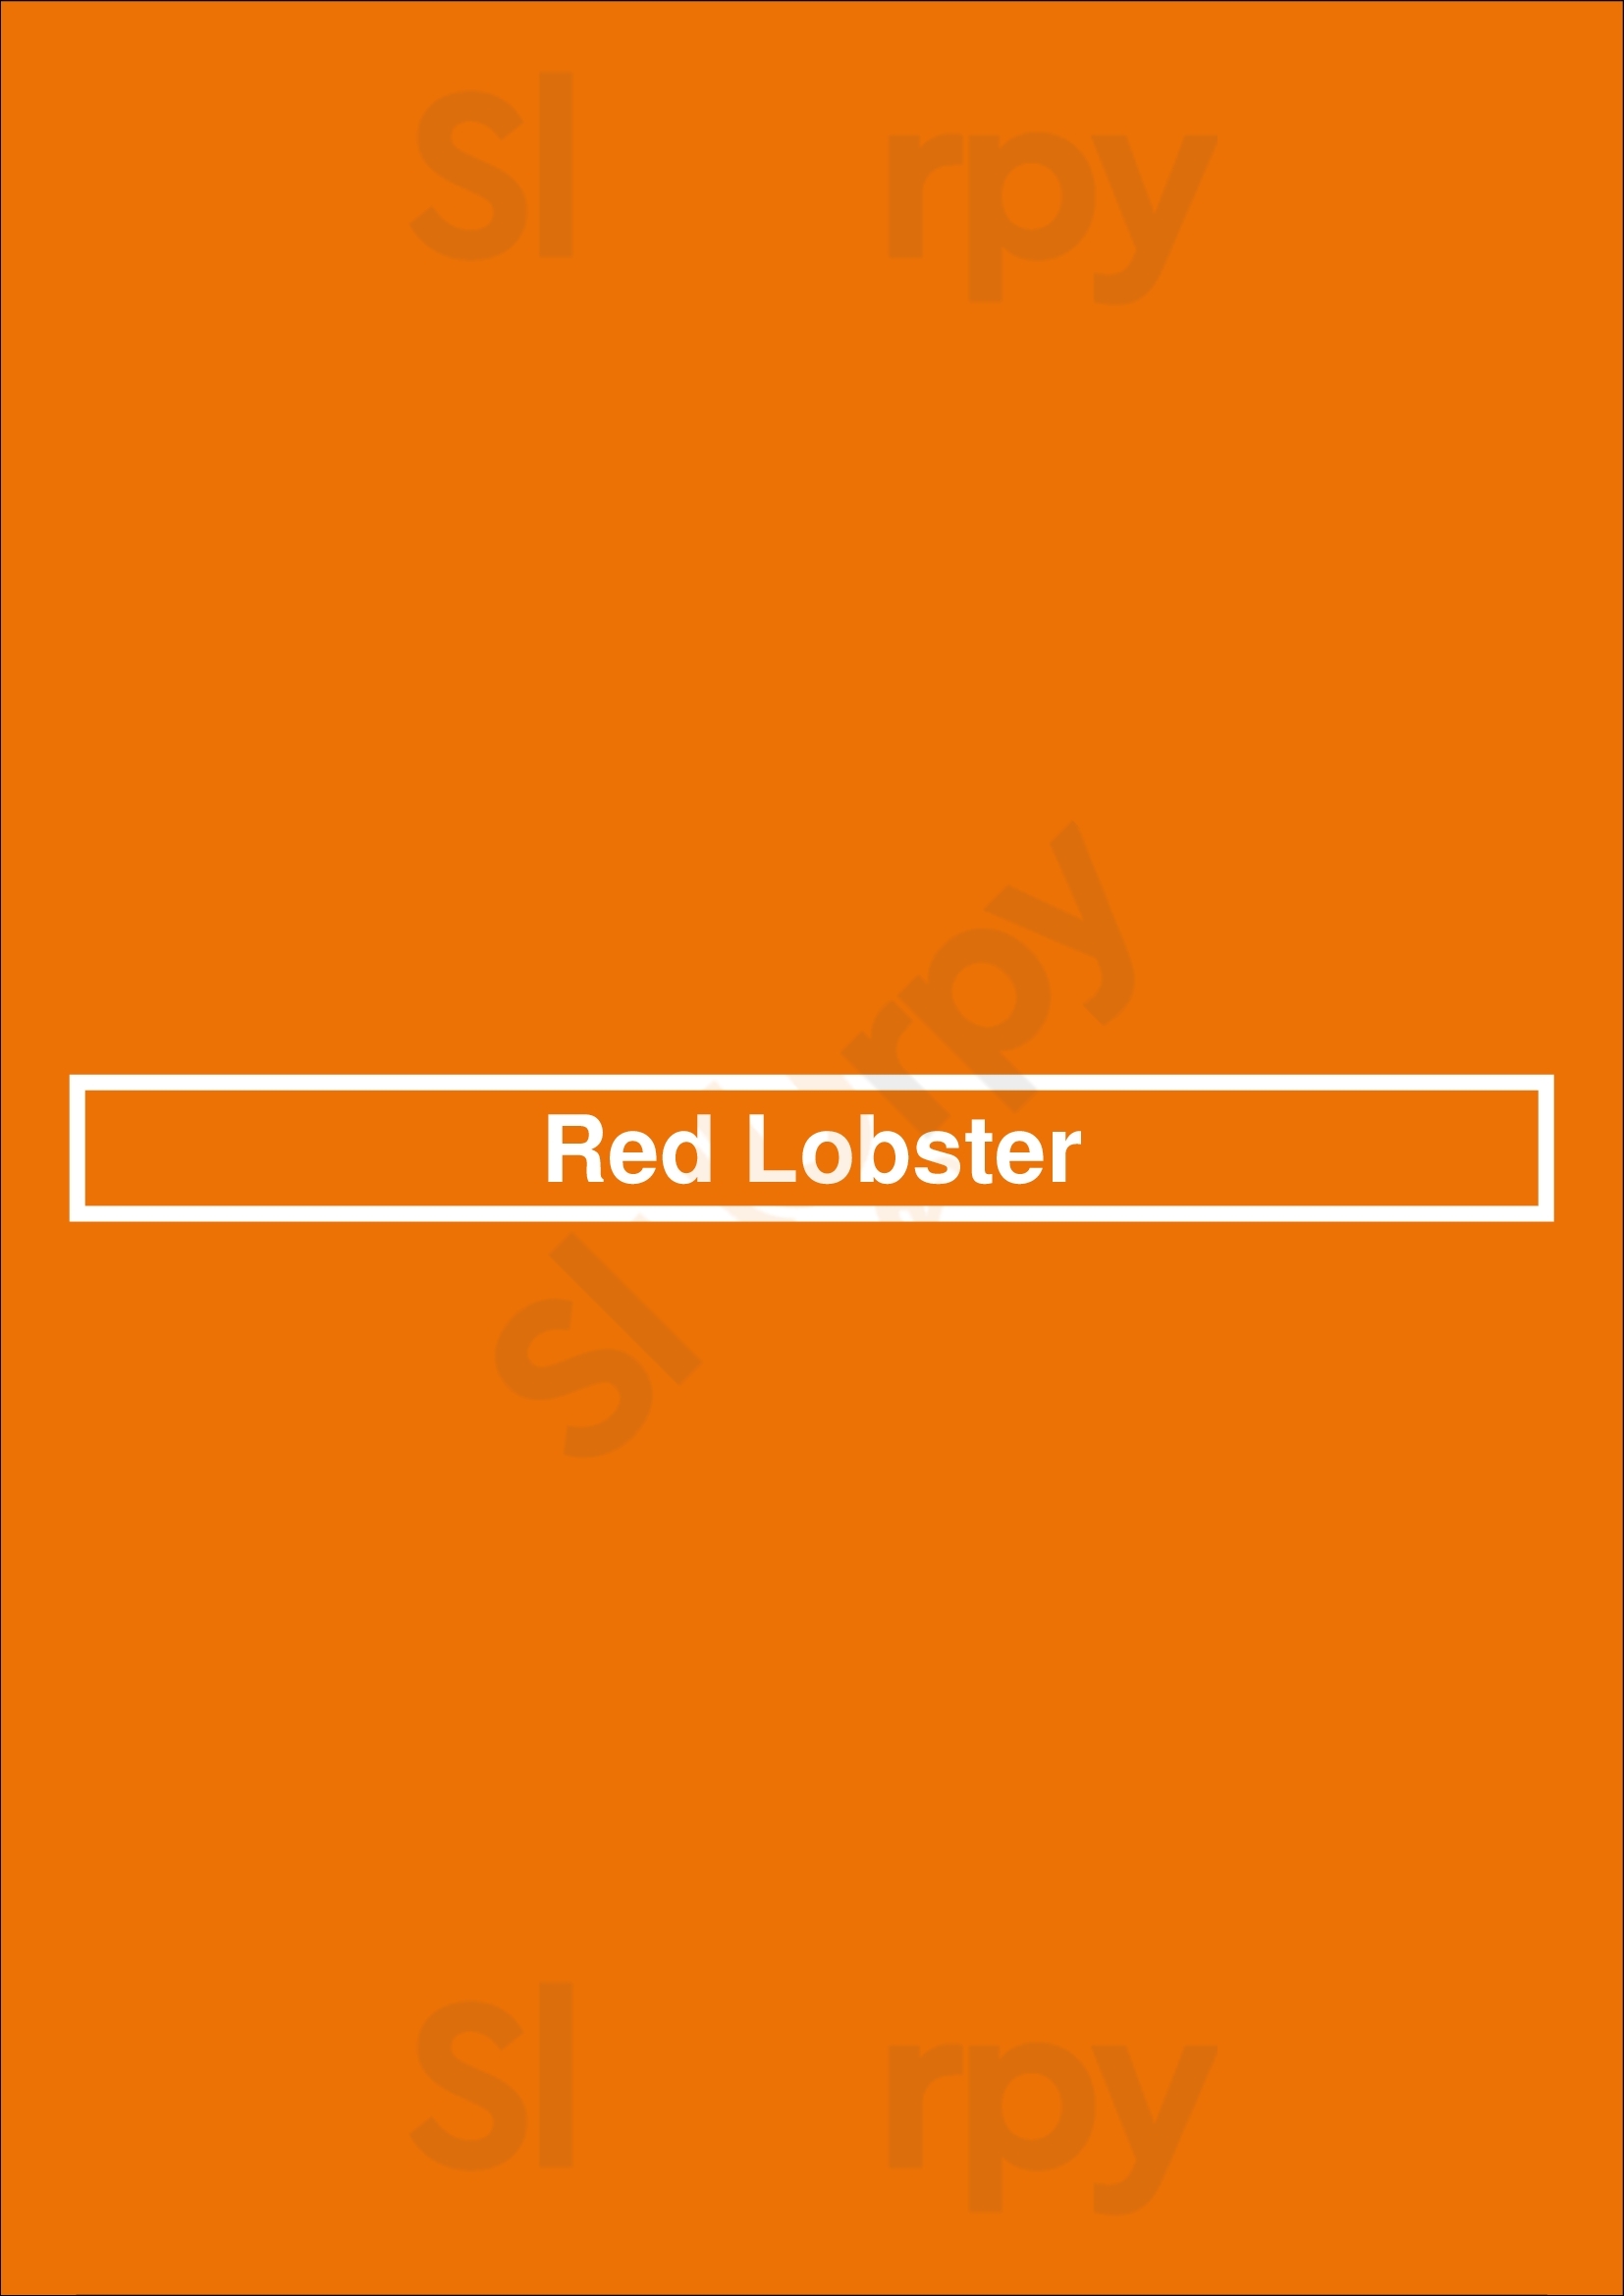 Red Lobster Lancaster Menu - 1